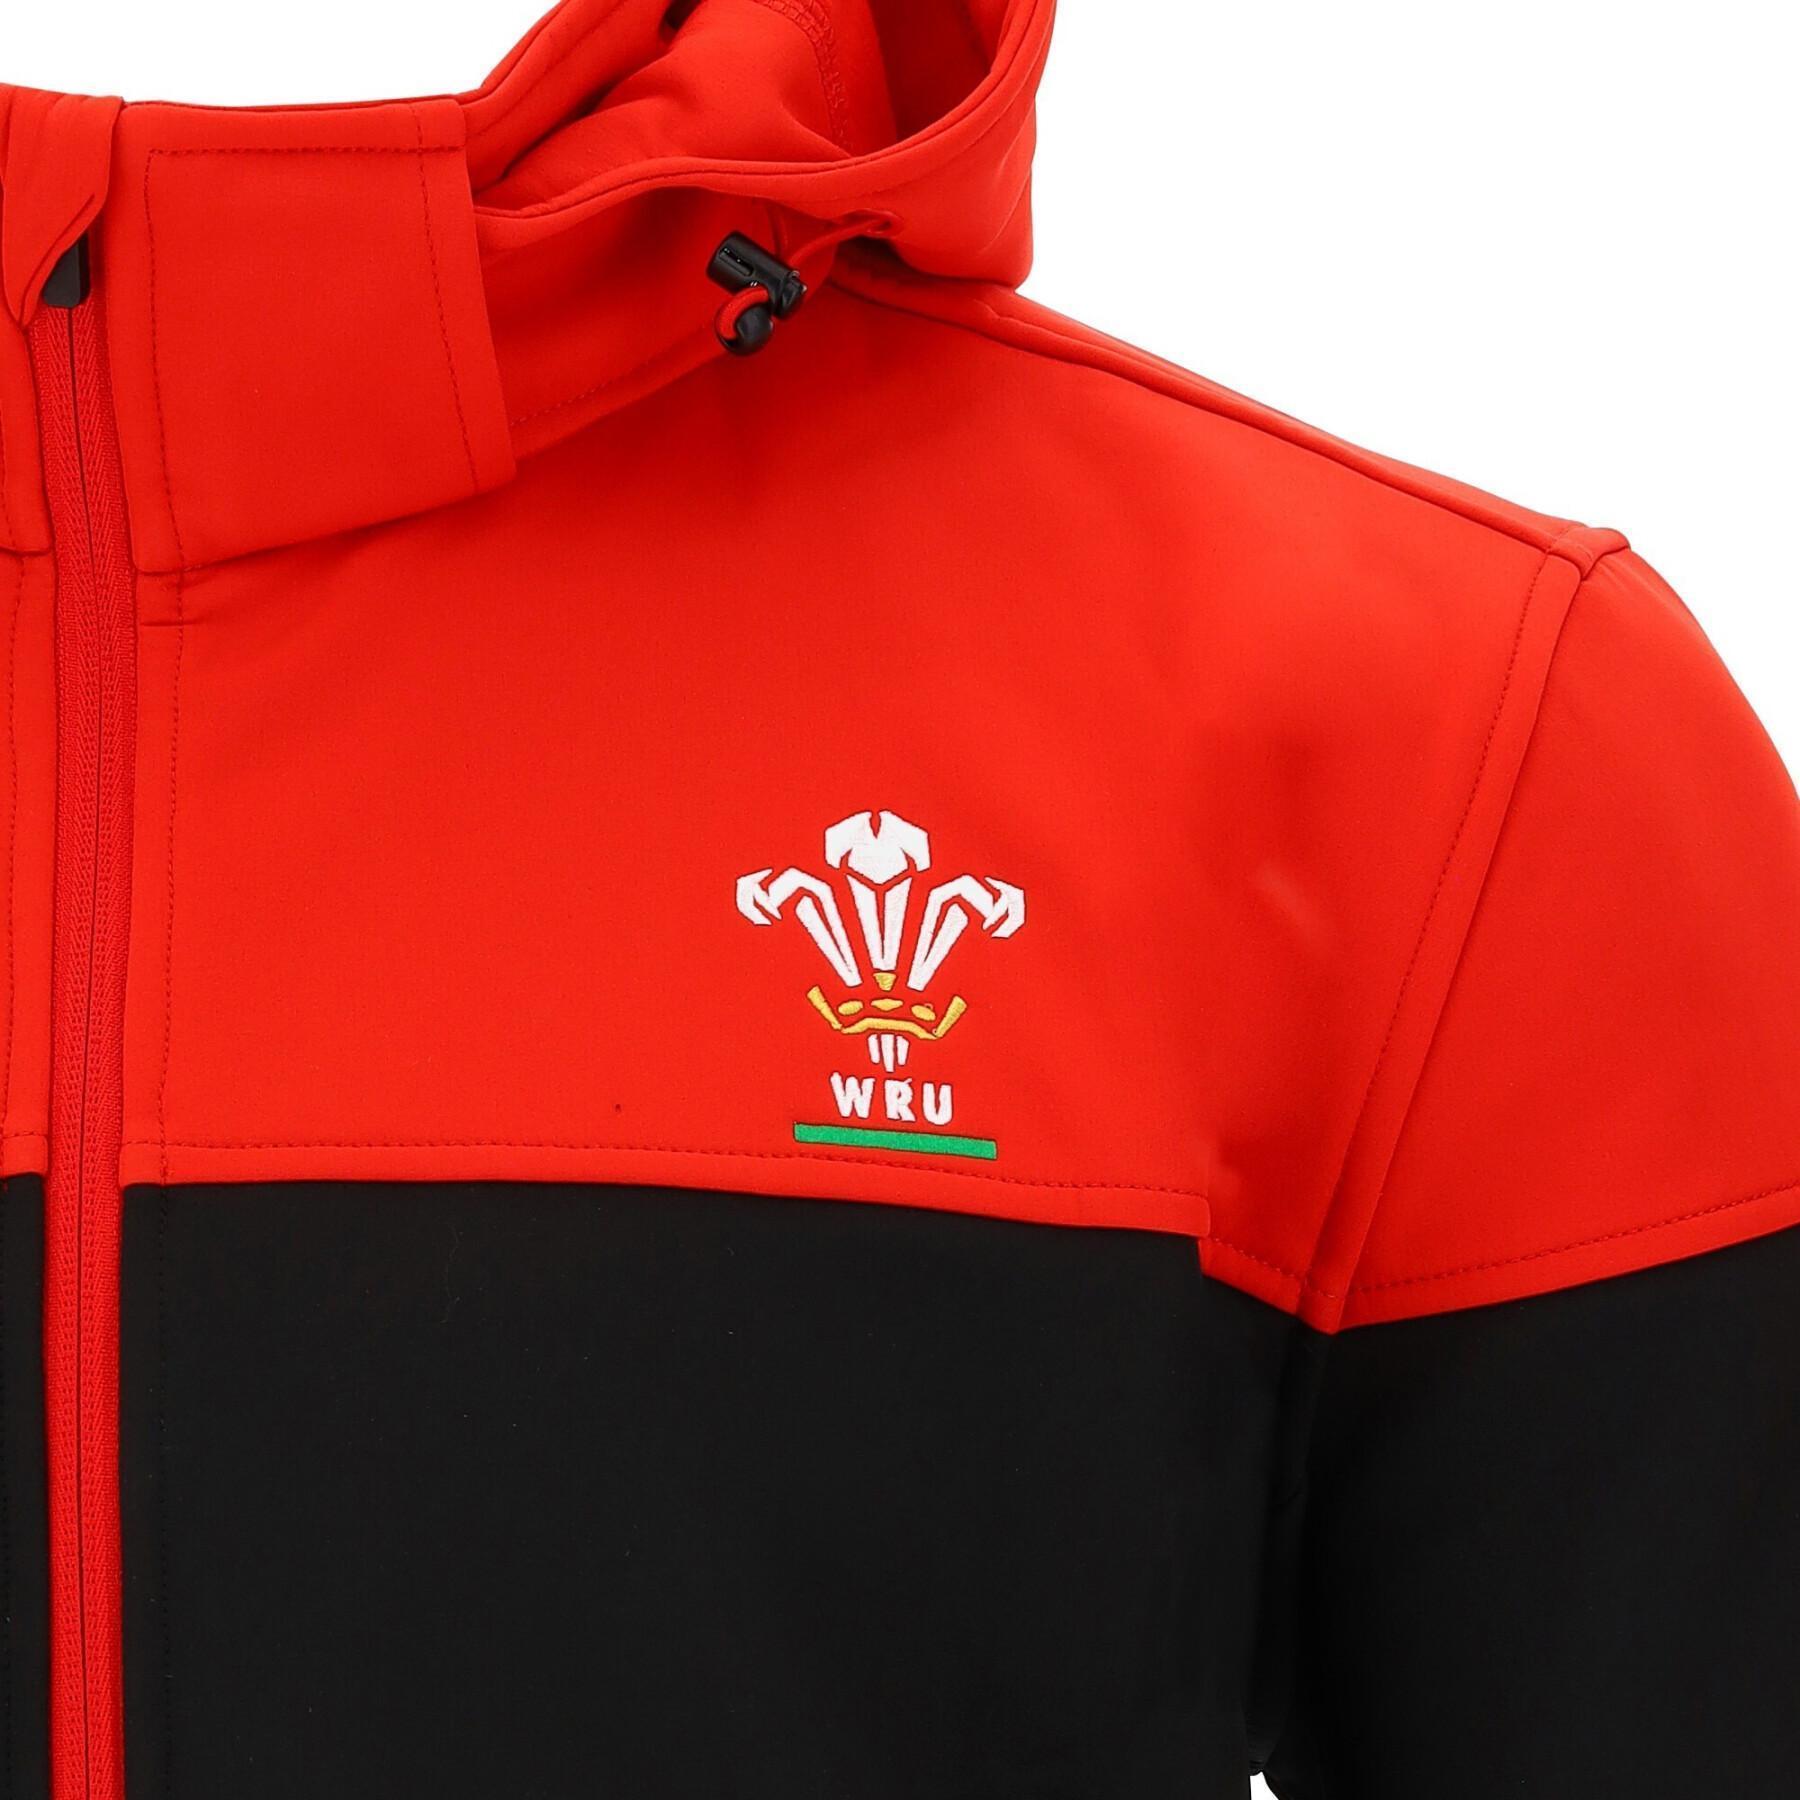 Chaqueta de cuerpo entero Pays de Galles rugby 2020/21